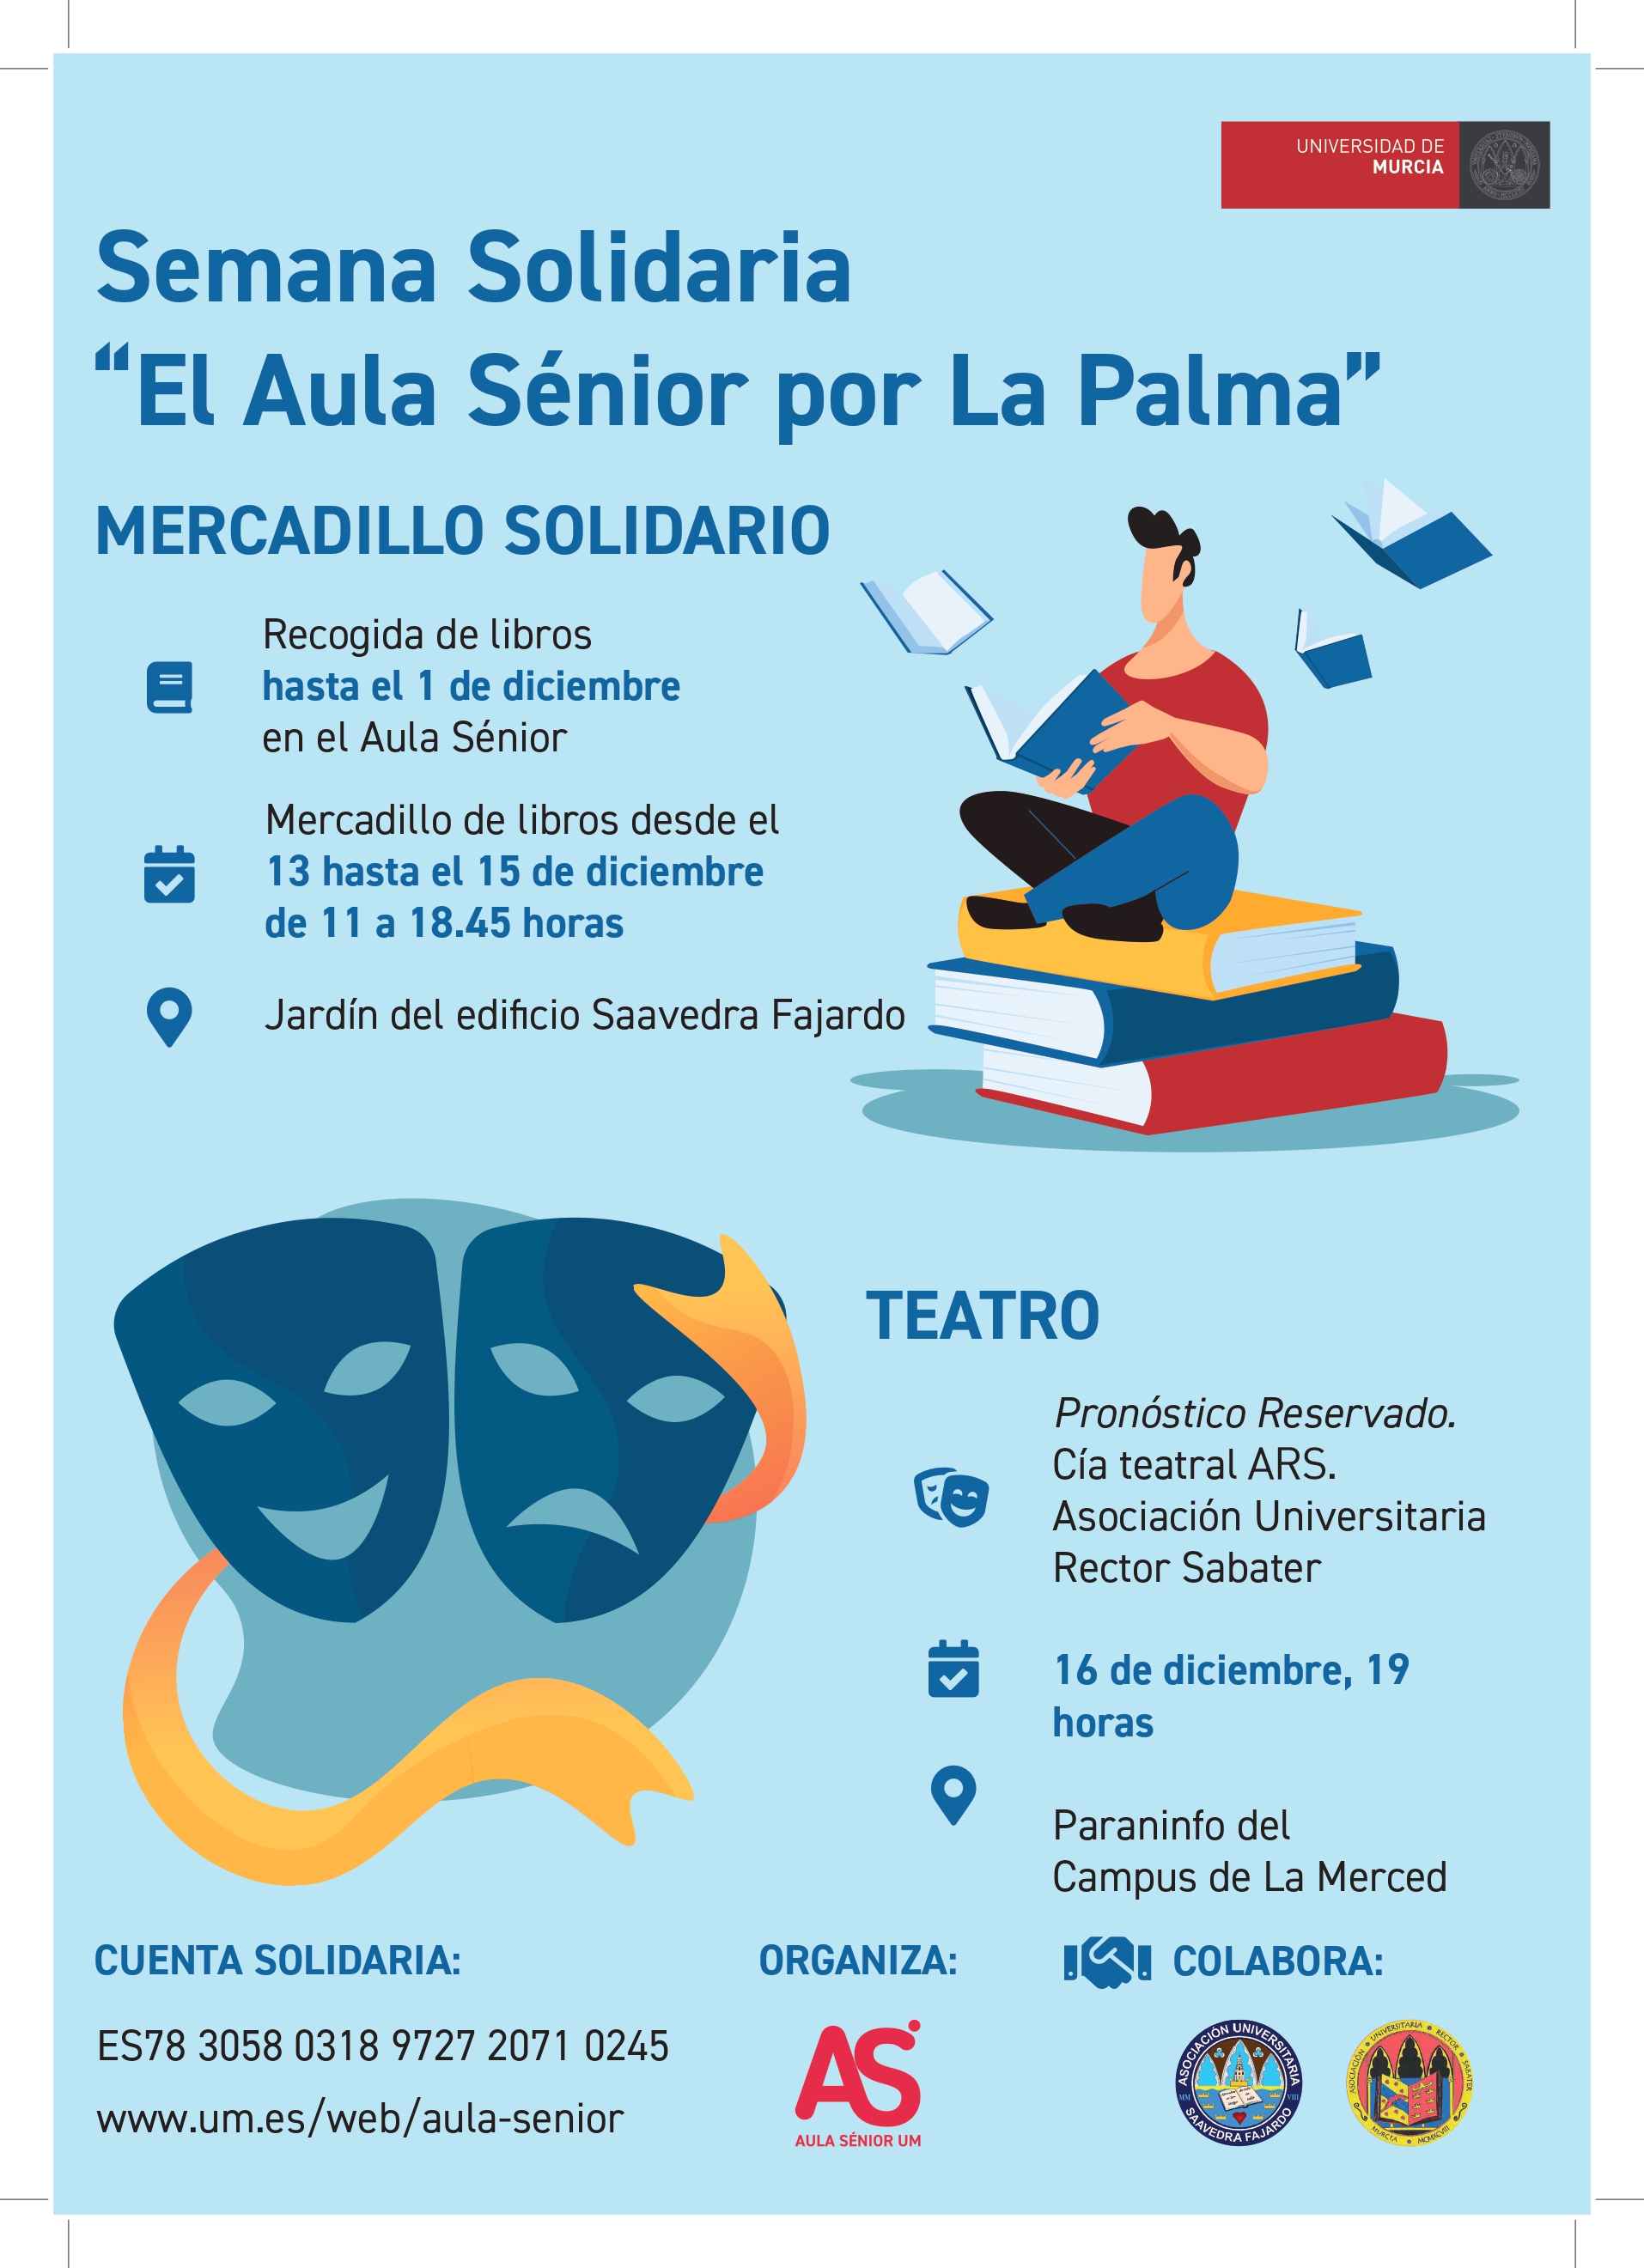 Semana solidaria del Aula Sénior por La Palma